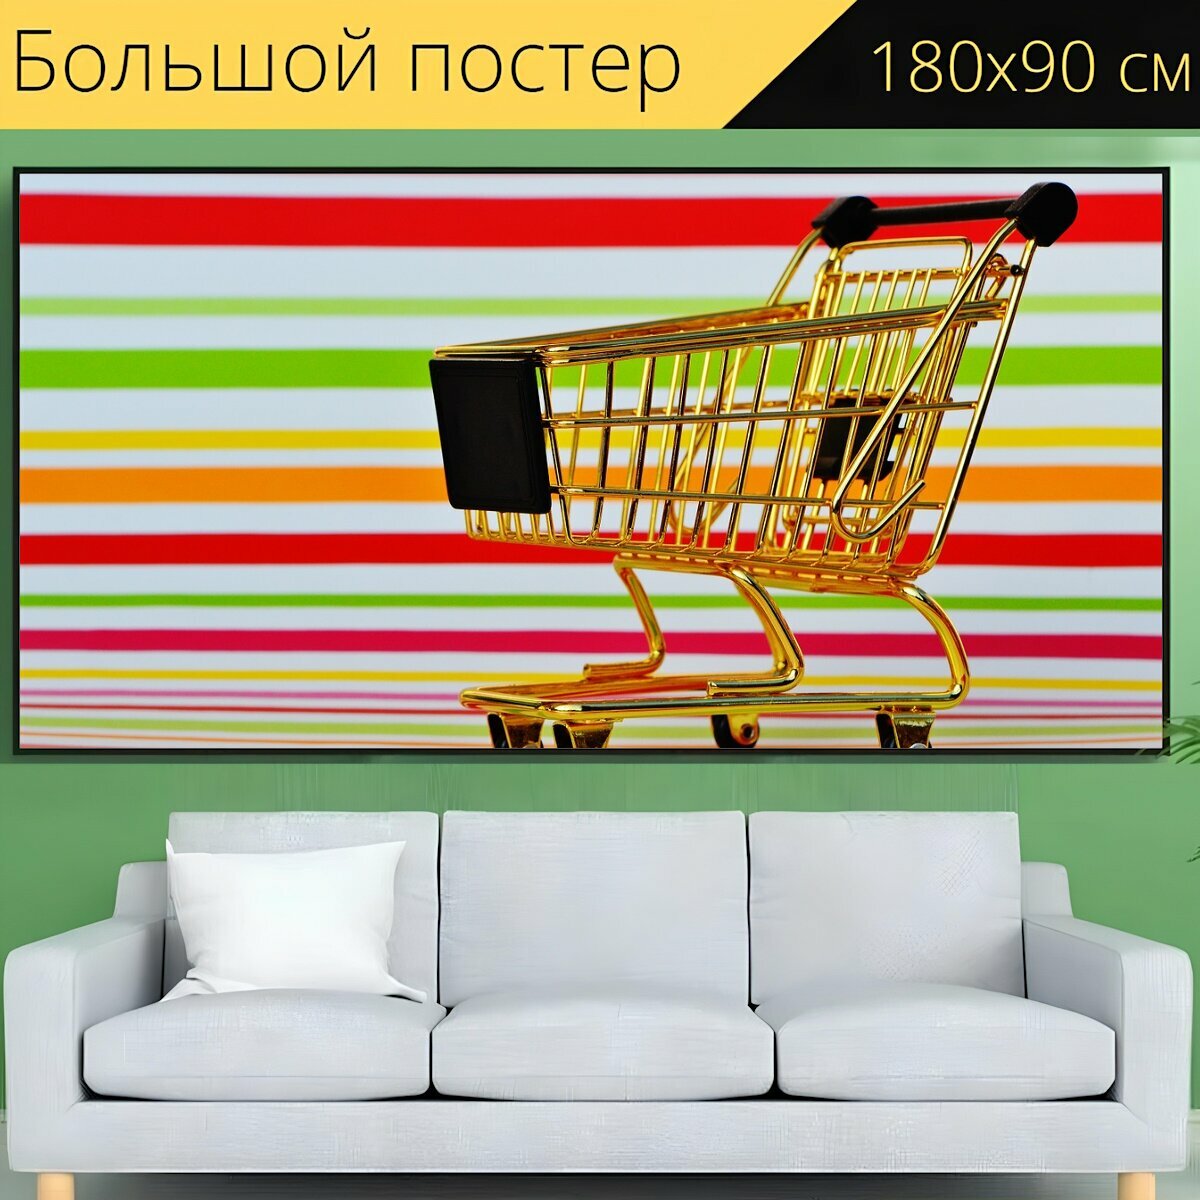 Большой постер "Торговое предприятие, поход по магазинам, покупка" 180 x 90 см. для интерьера